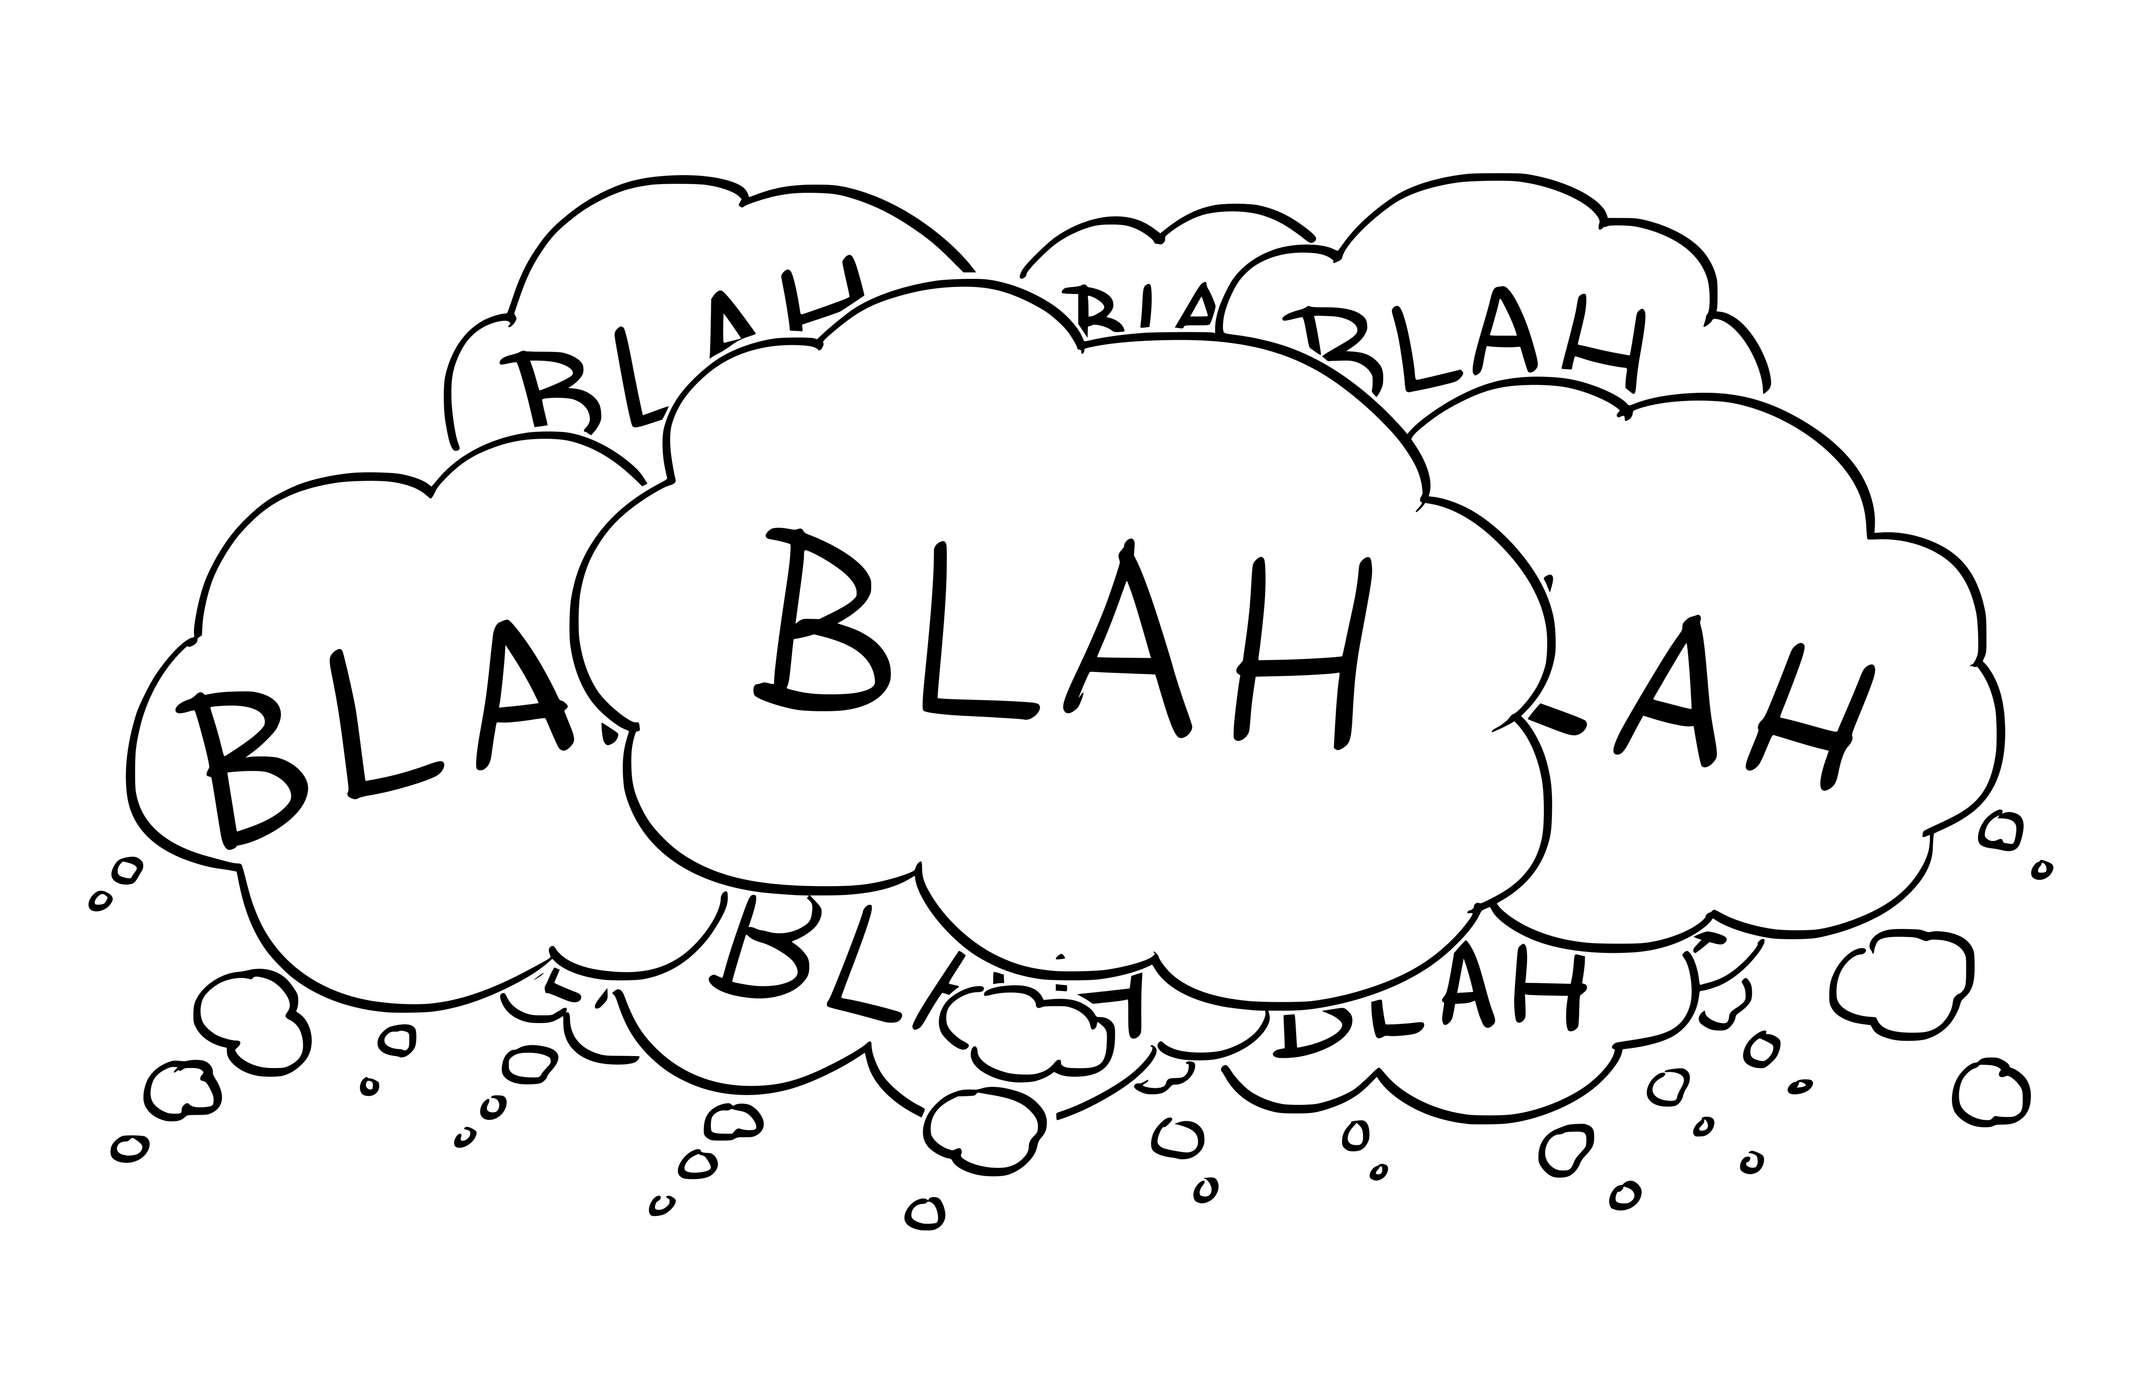 Cartoon konzeptionelle Zeichnung oder Illustration einer Gruppe von Text- oder Sprechblasen oder Blasen, die Blabla sagen.